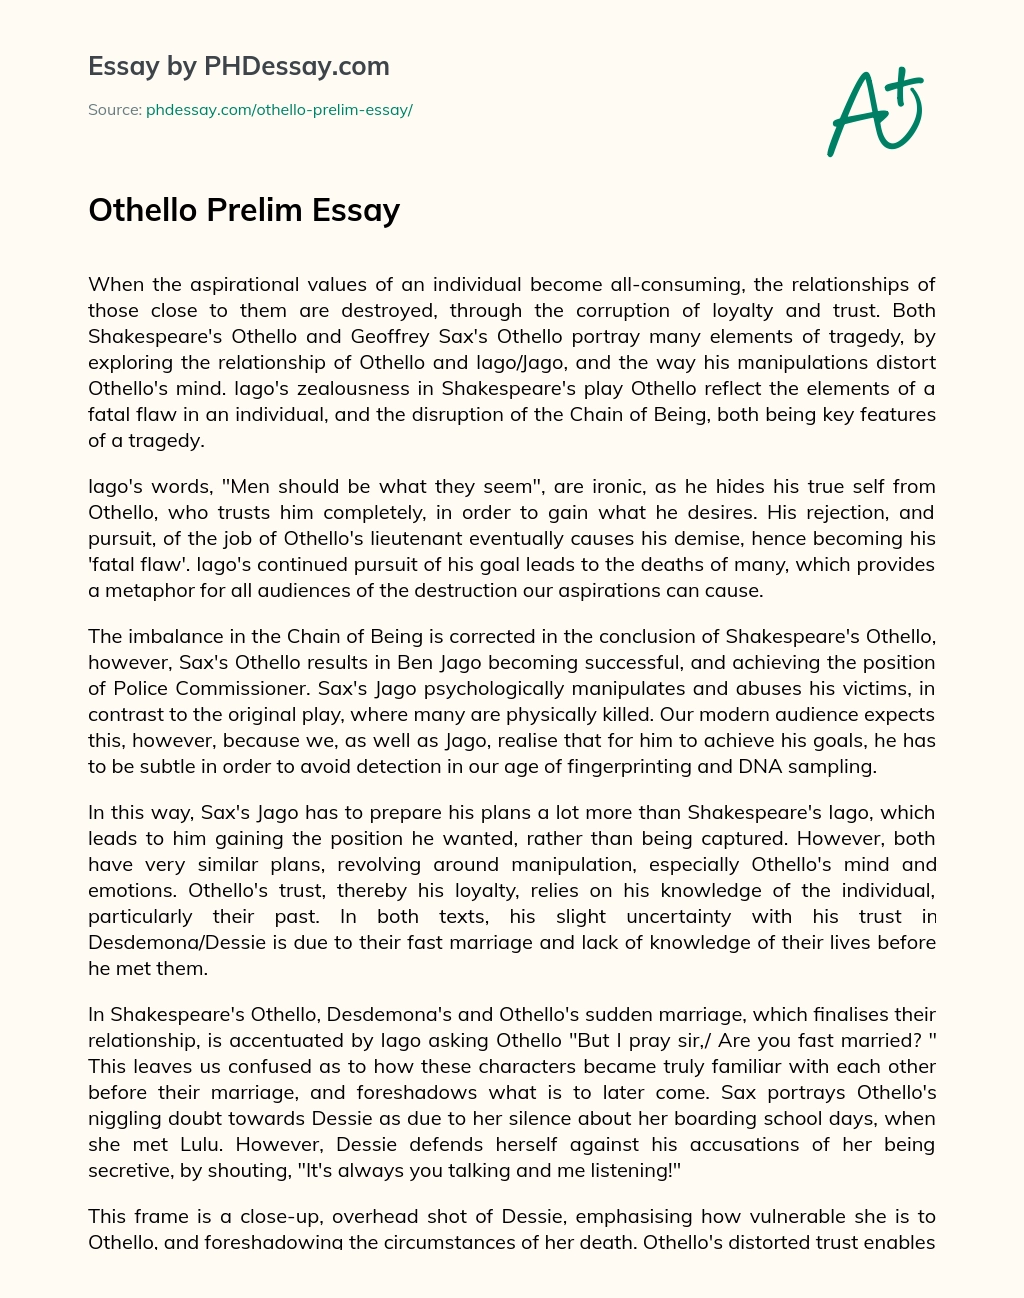 Othello Prelim Essay essay